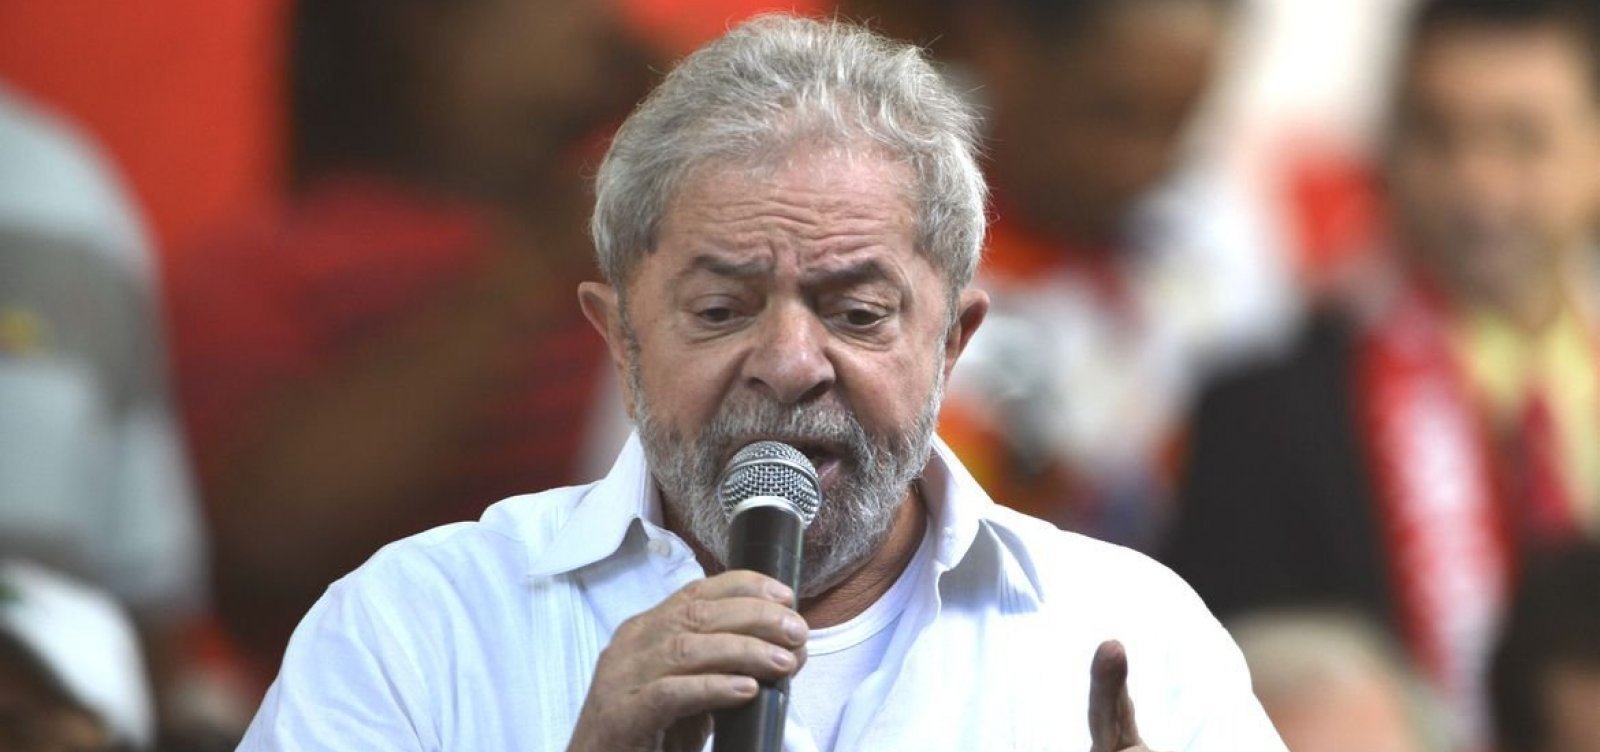 Após PF negar reforço, Lula cancela evento de estreia da campanha por falta de segurança